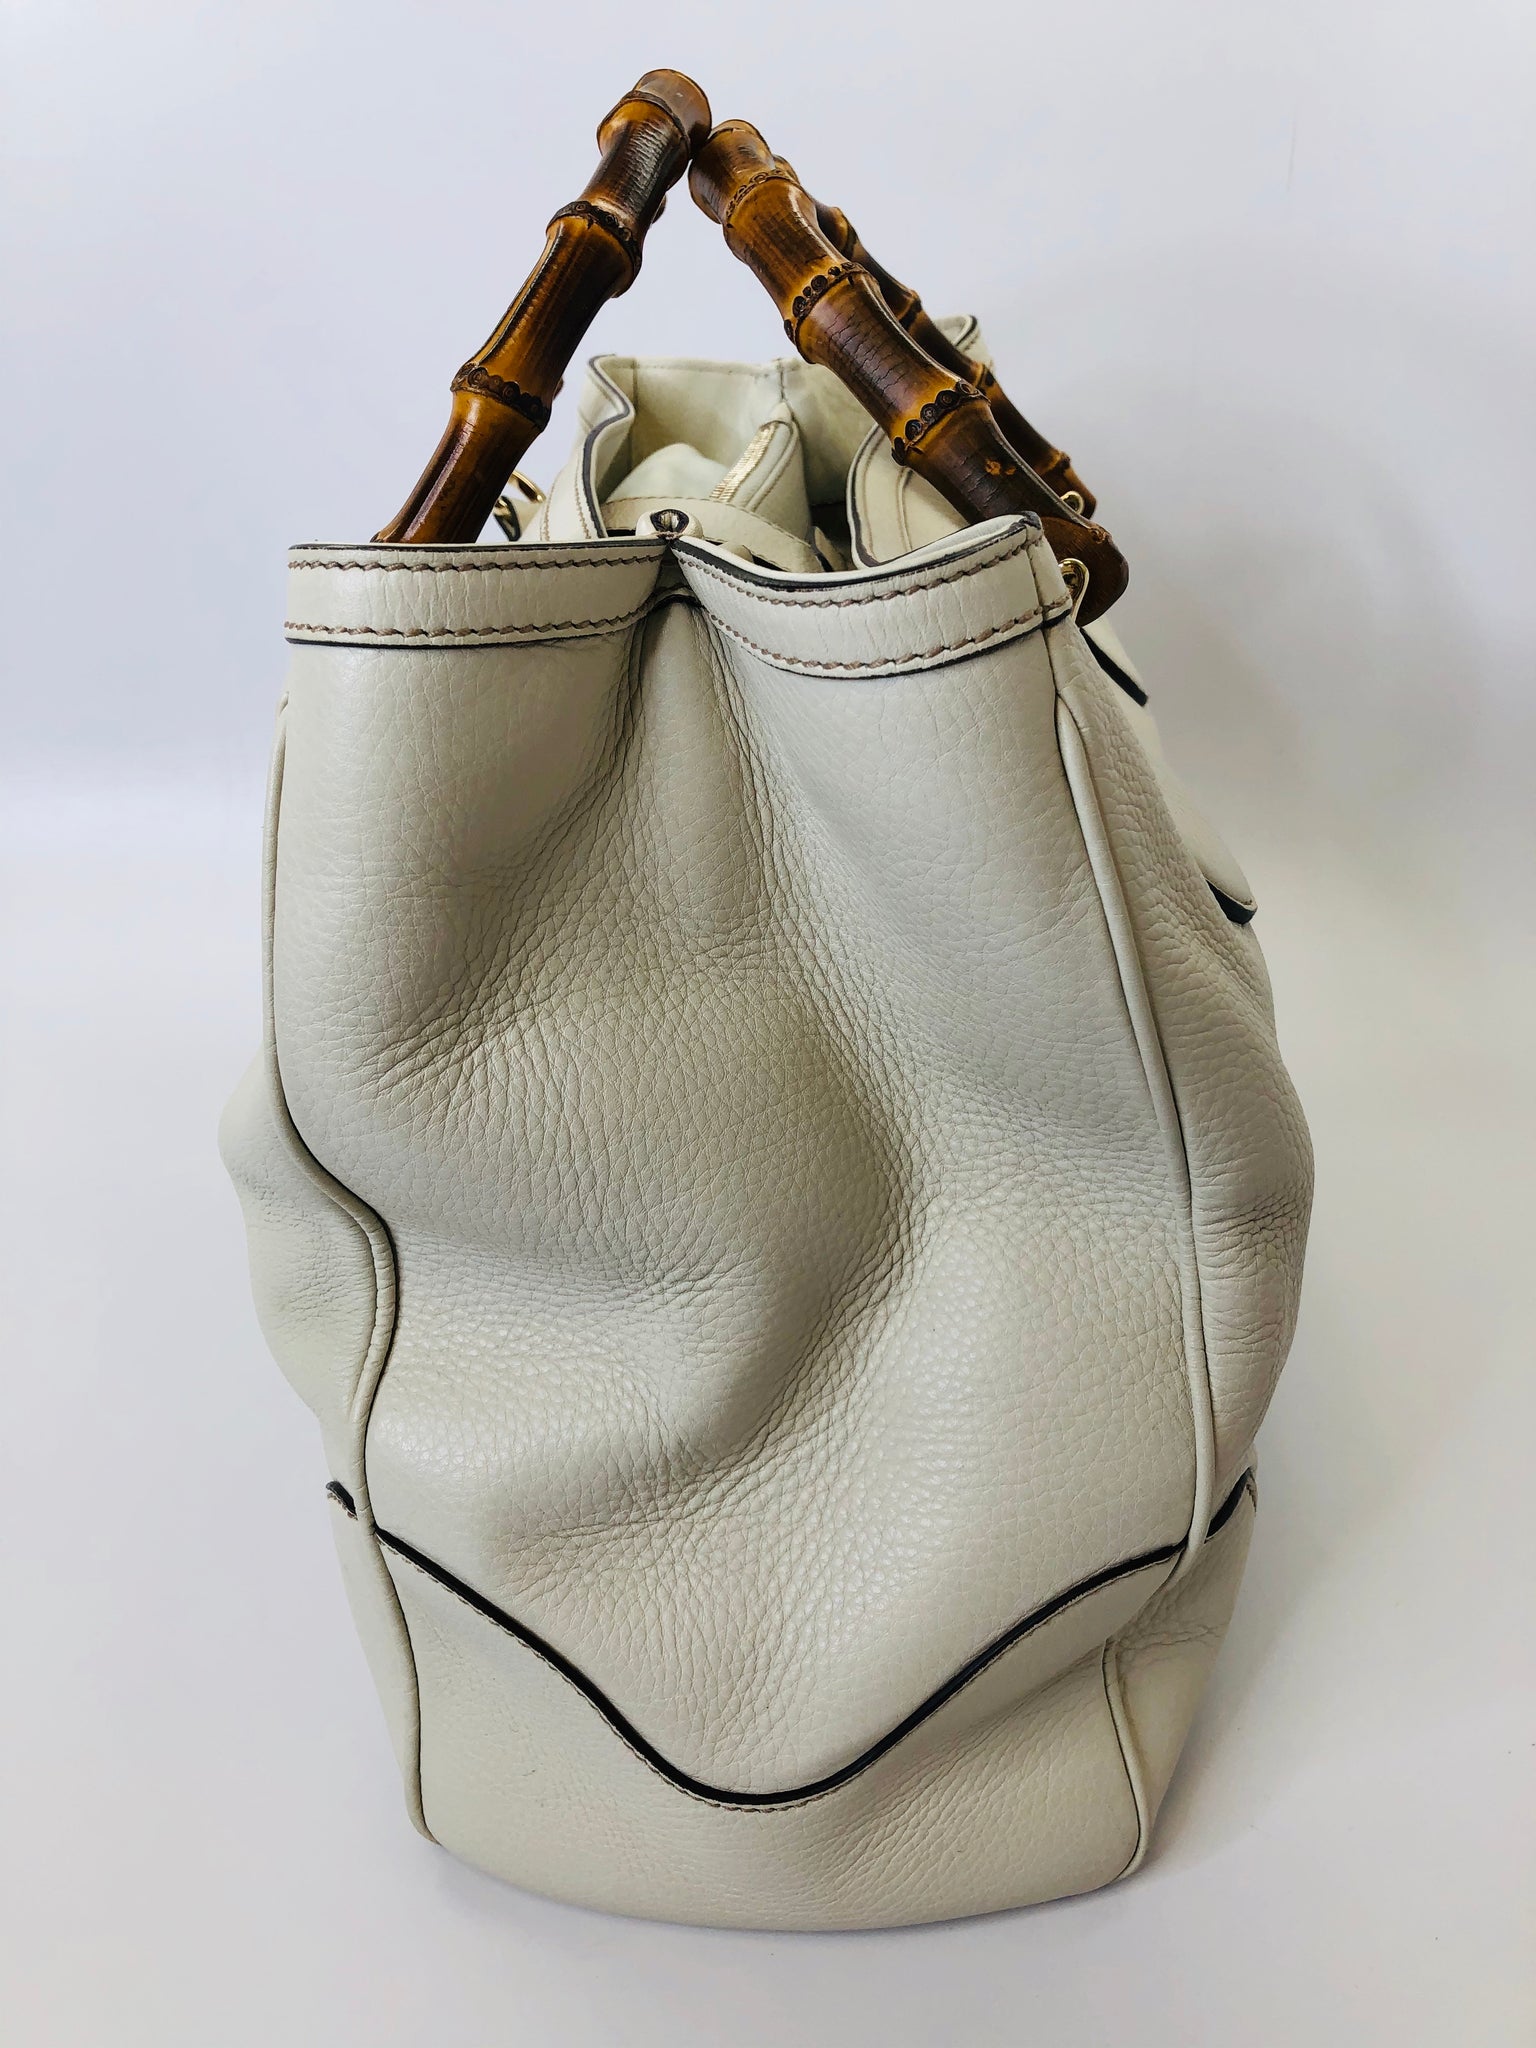 Gucci Diana medium tote bag in beige leather